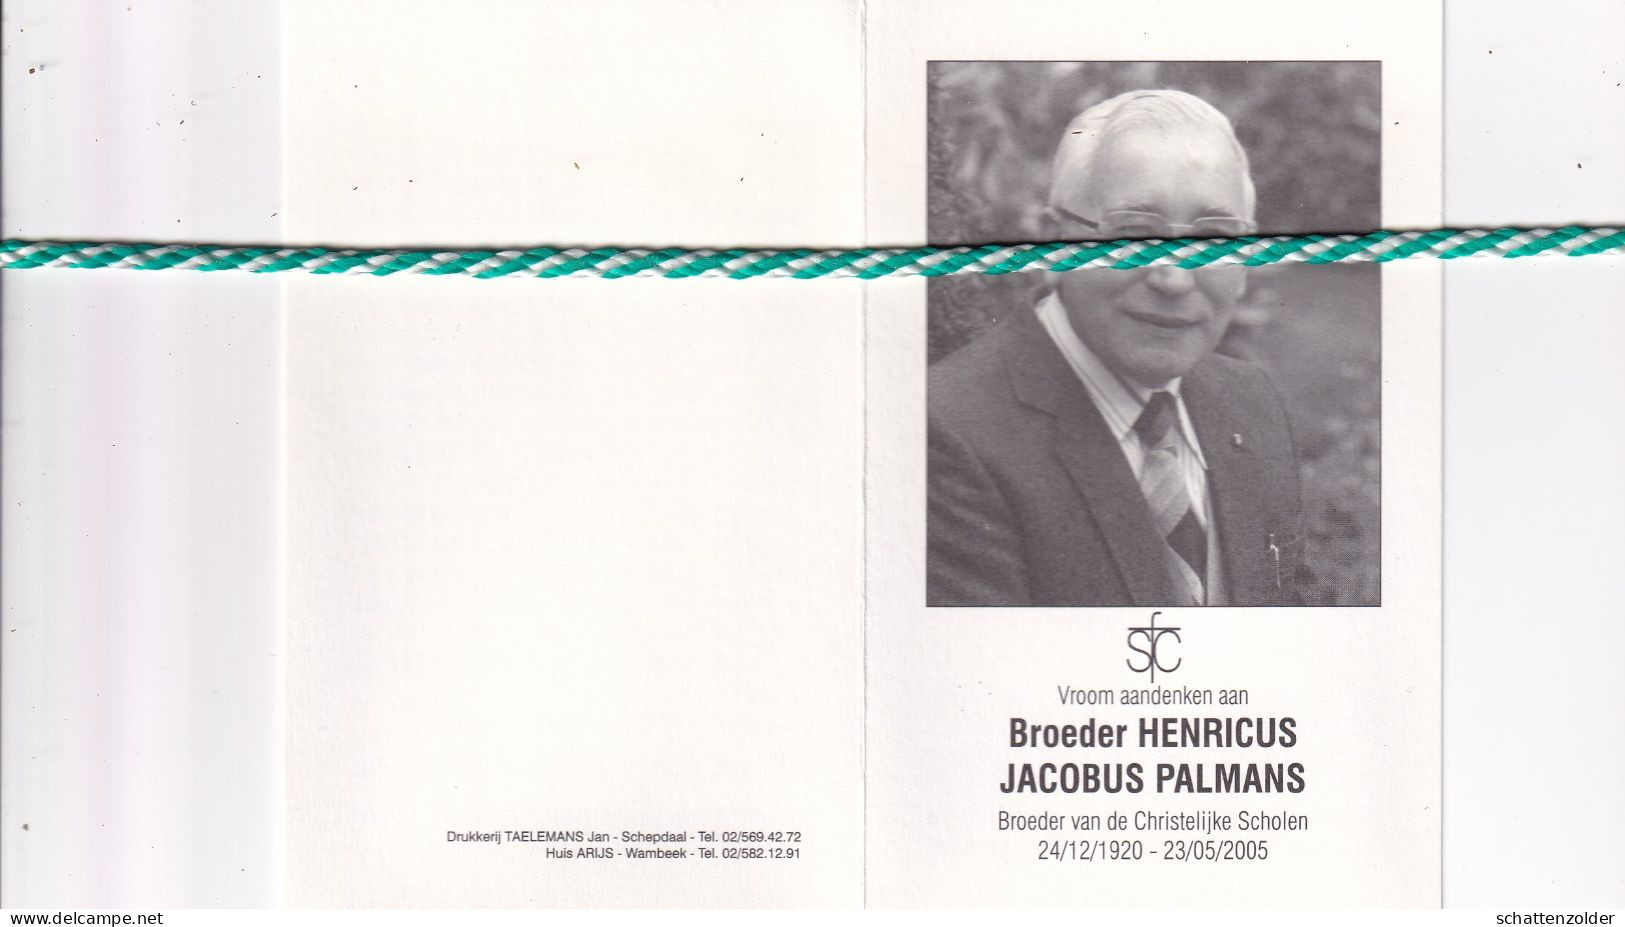 Broeder Henricus (Jacobus Palmans), Hamont 1920, Groot-Bijgaarden 2005. Foto - Obituary Notices